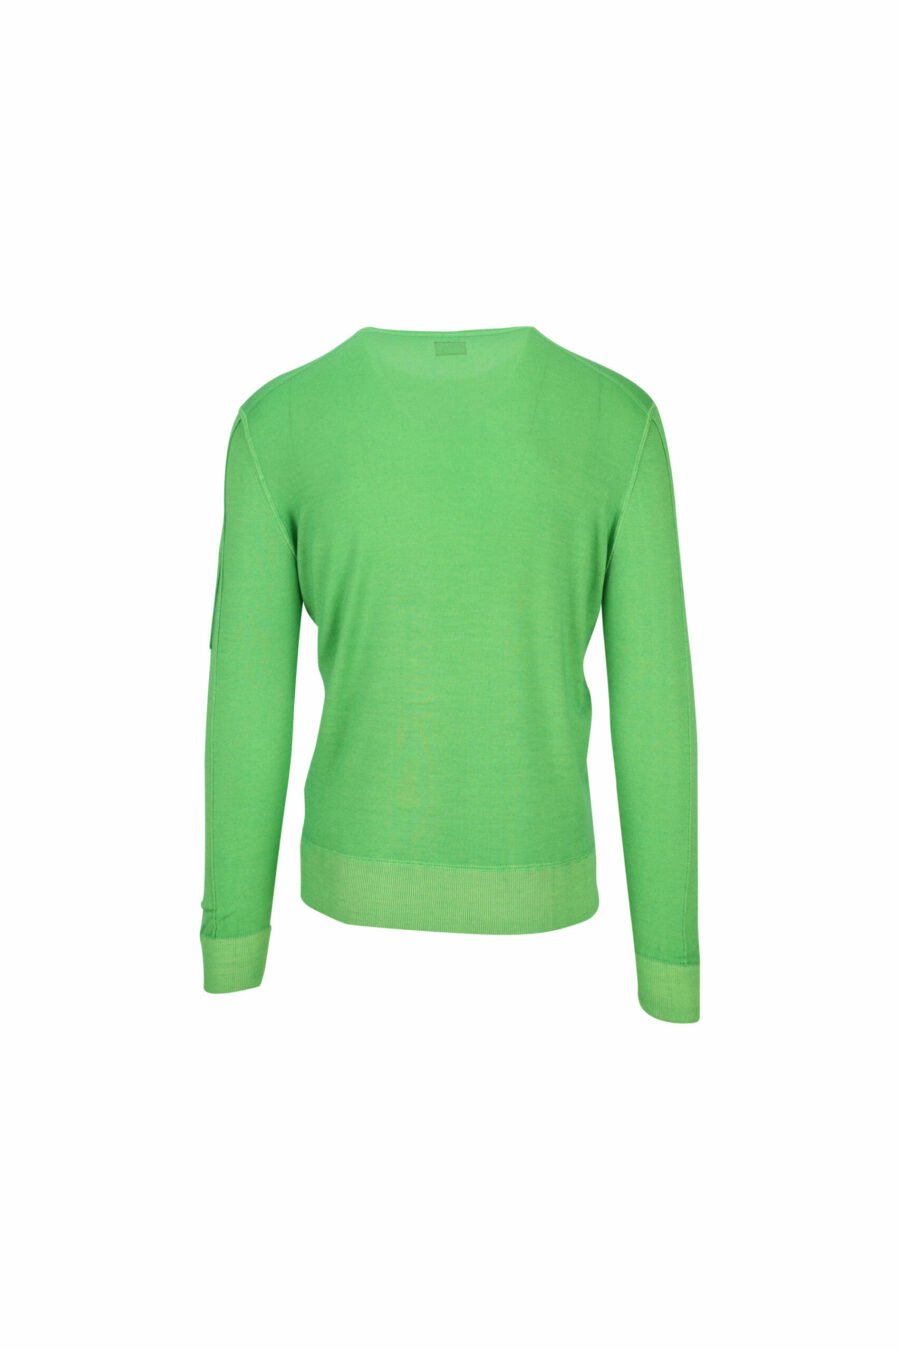 Grünes Sweatshirt mit seitlichem Linsenlogo - 7620943580846 1 skaliert